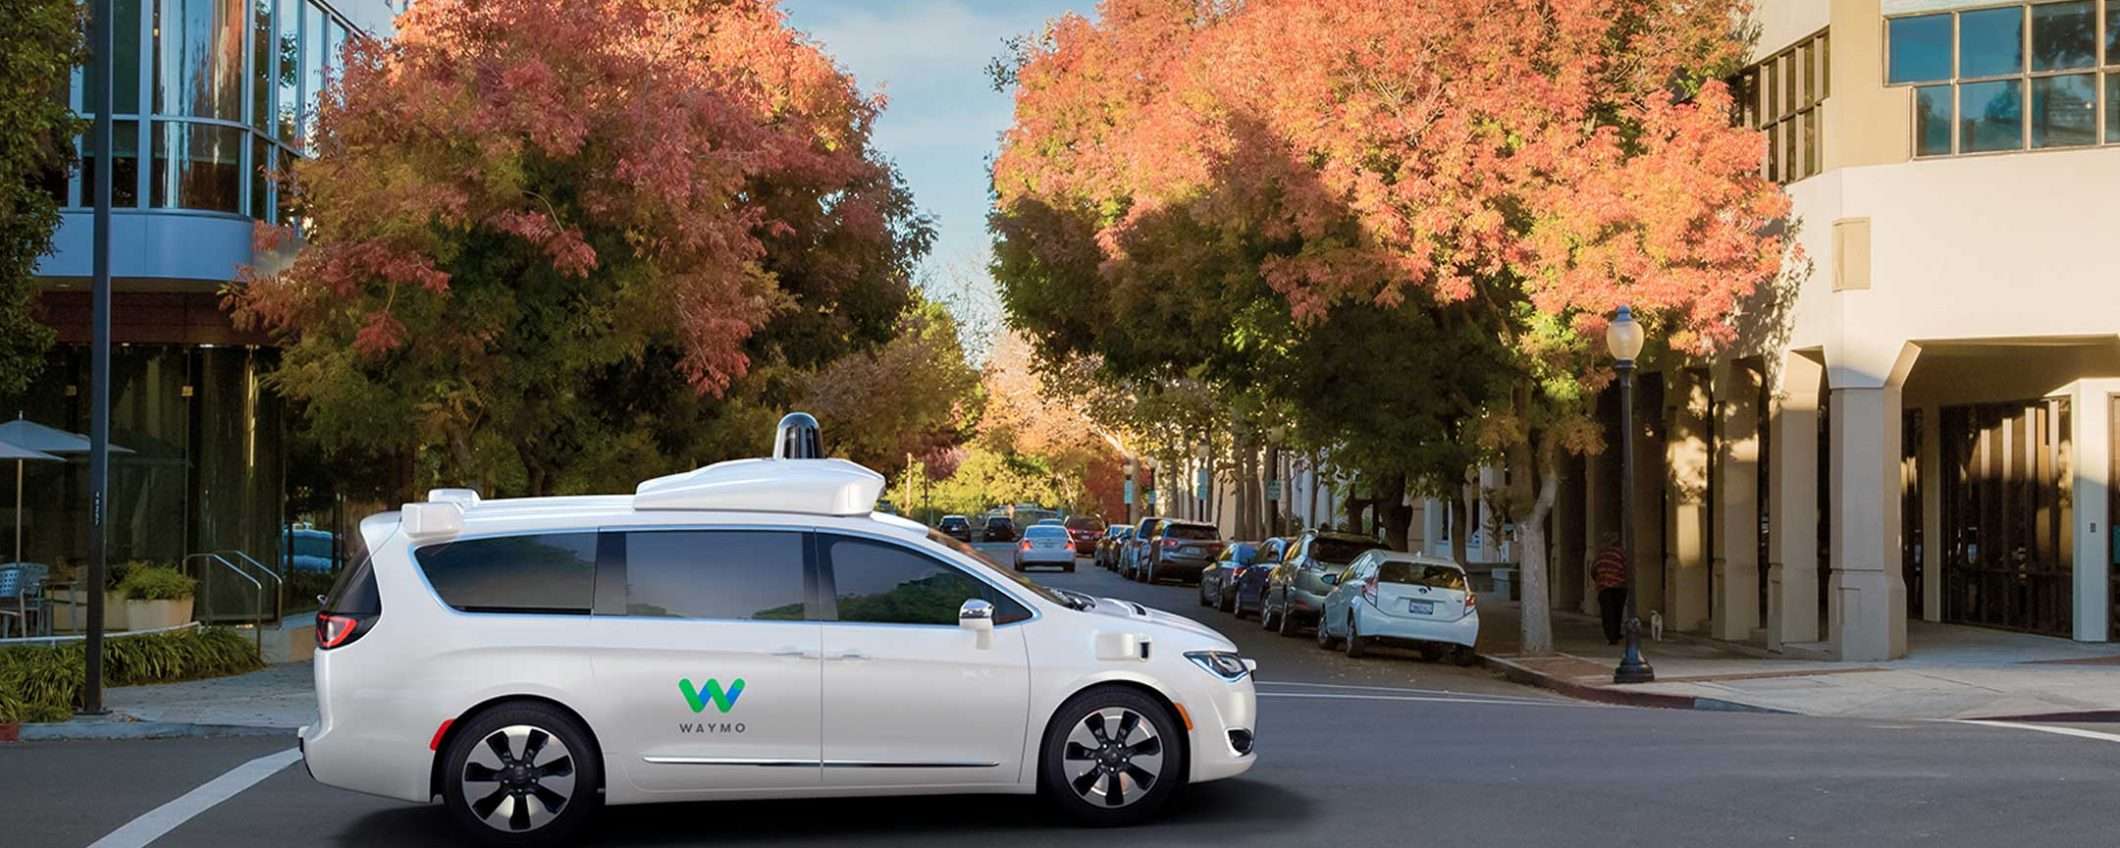 Self-driving car: Waymo cerca investitori